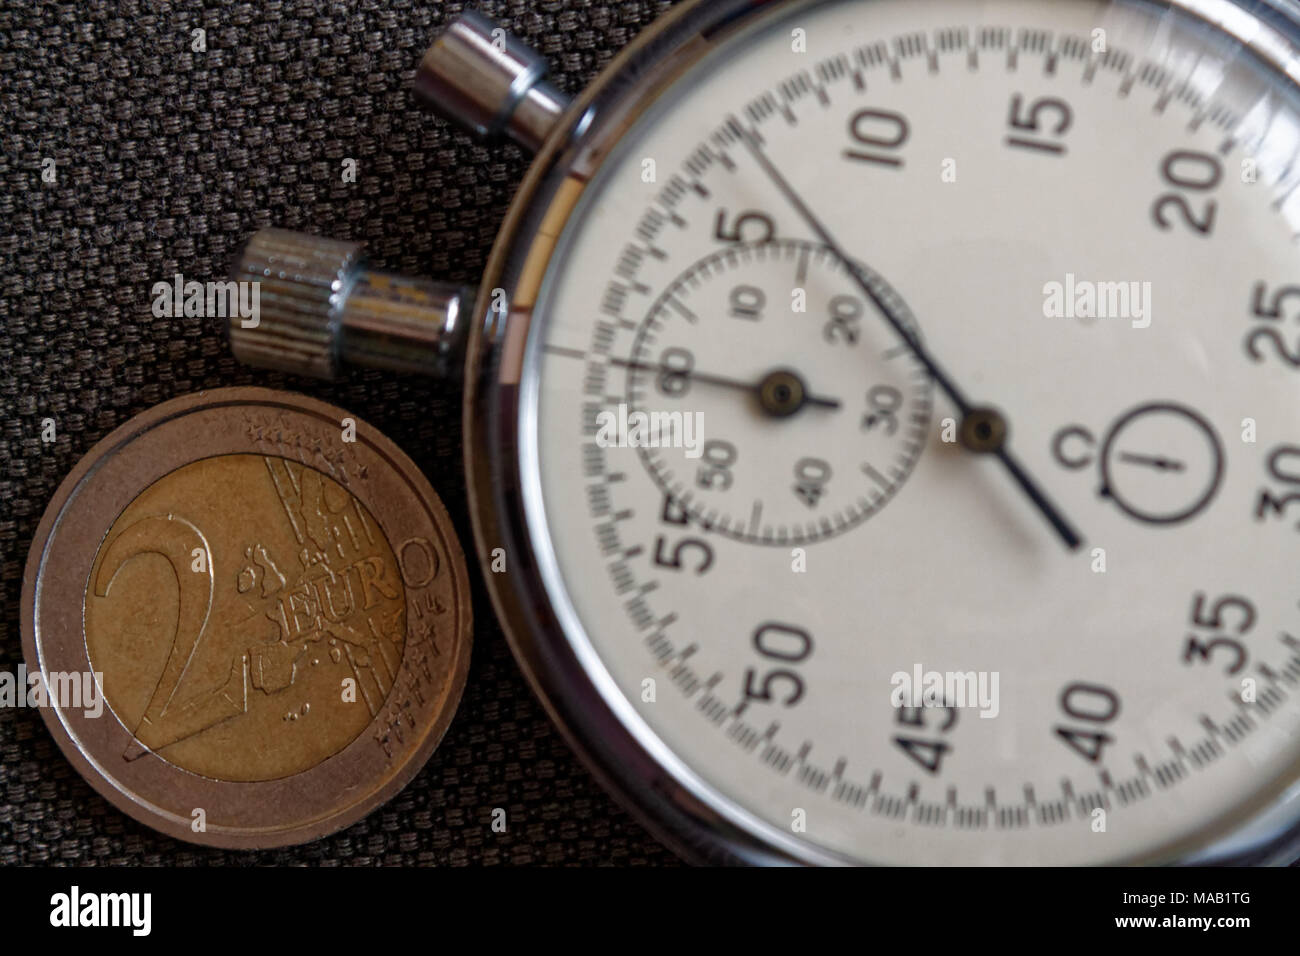 Pièce en euros d'une valeur nominale de deux euro et chronomètre sur toile Denim marron - business background Banque D'Images